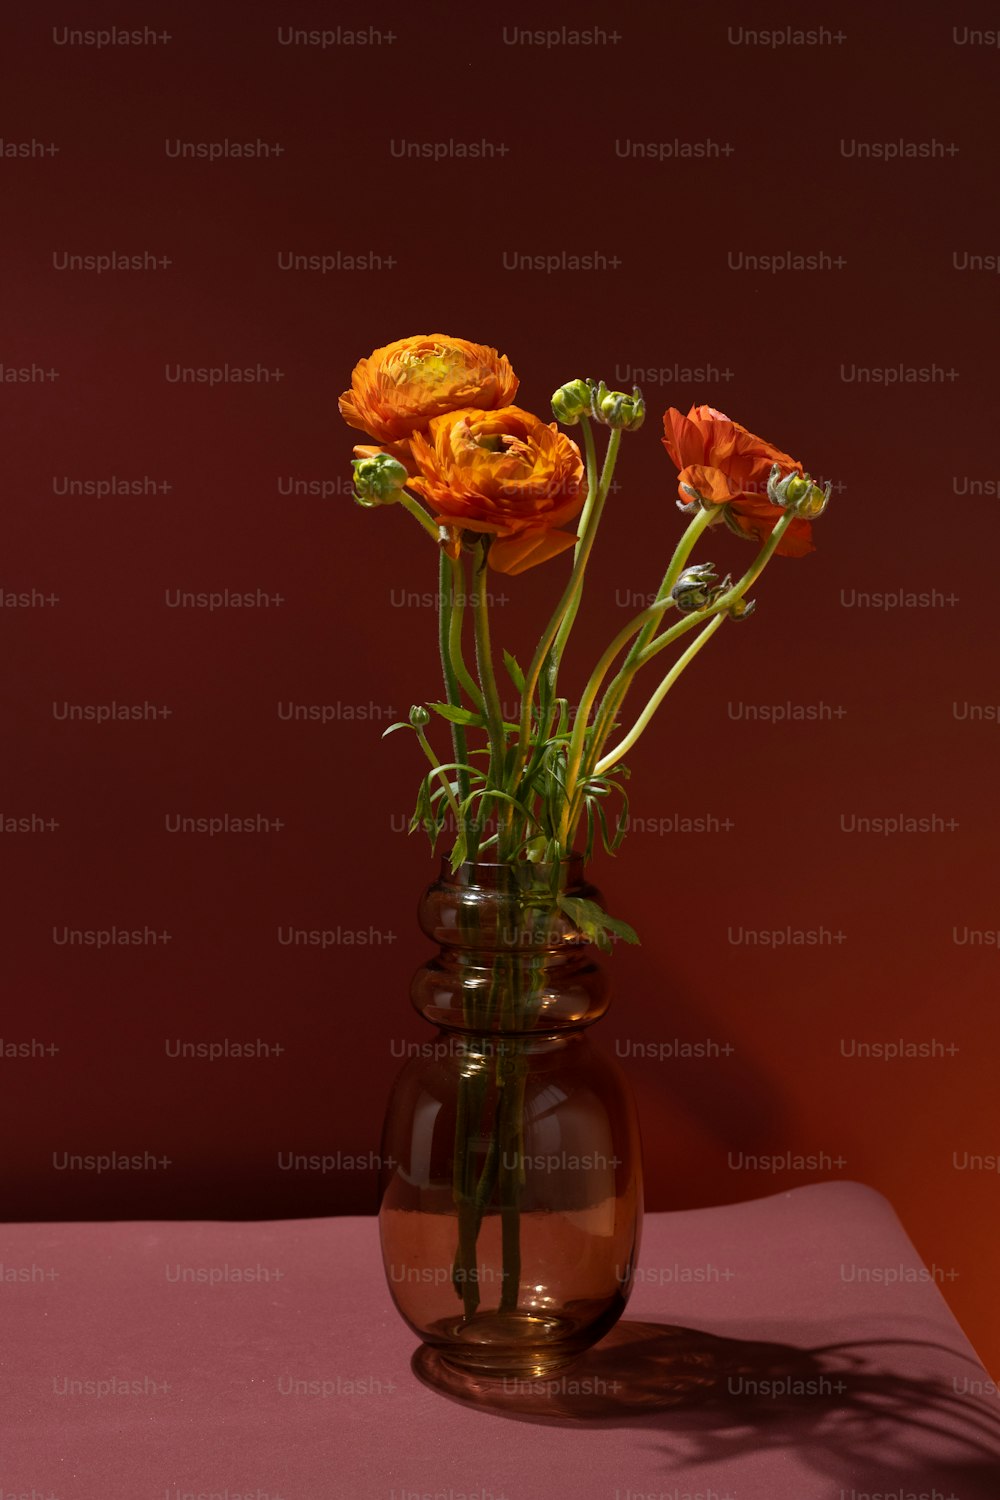 un vase rempli de fleurs oranges sur une table